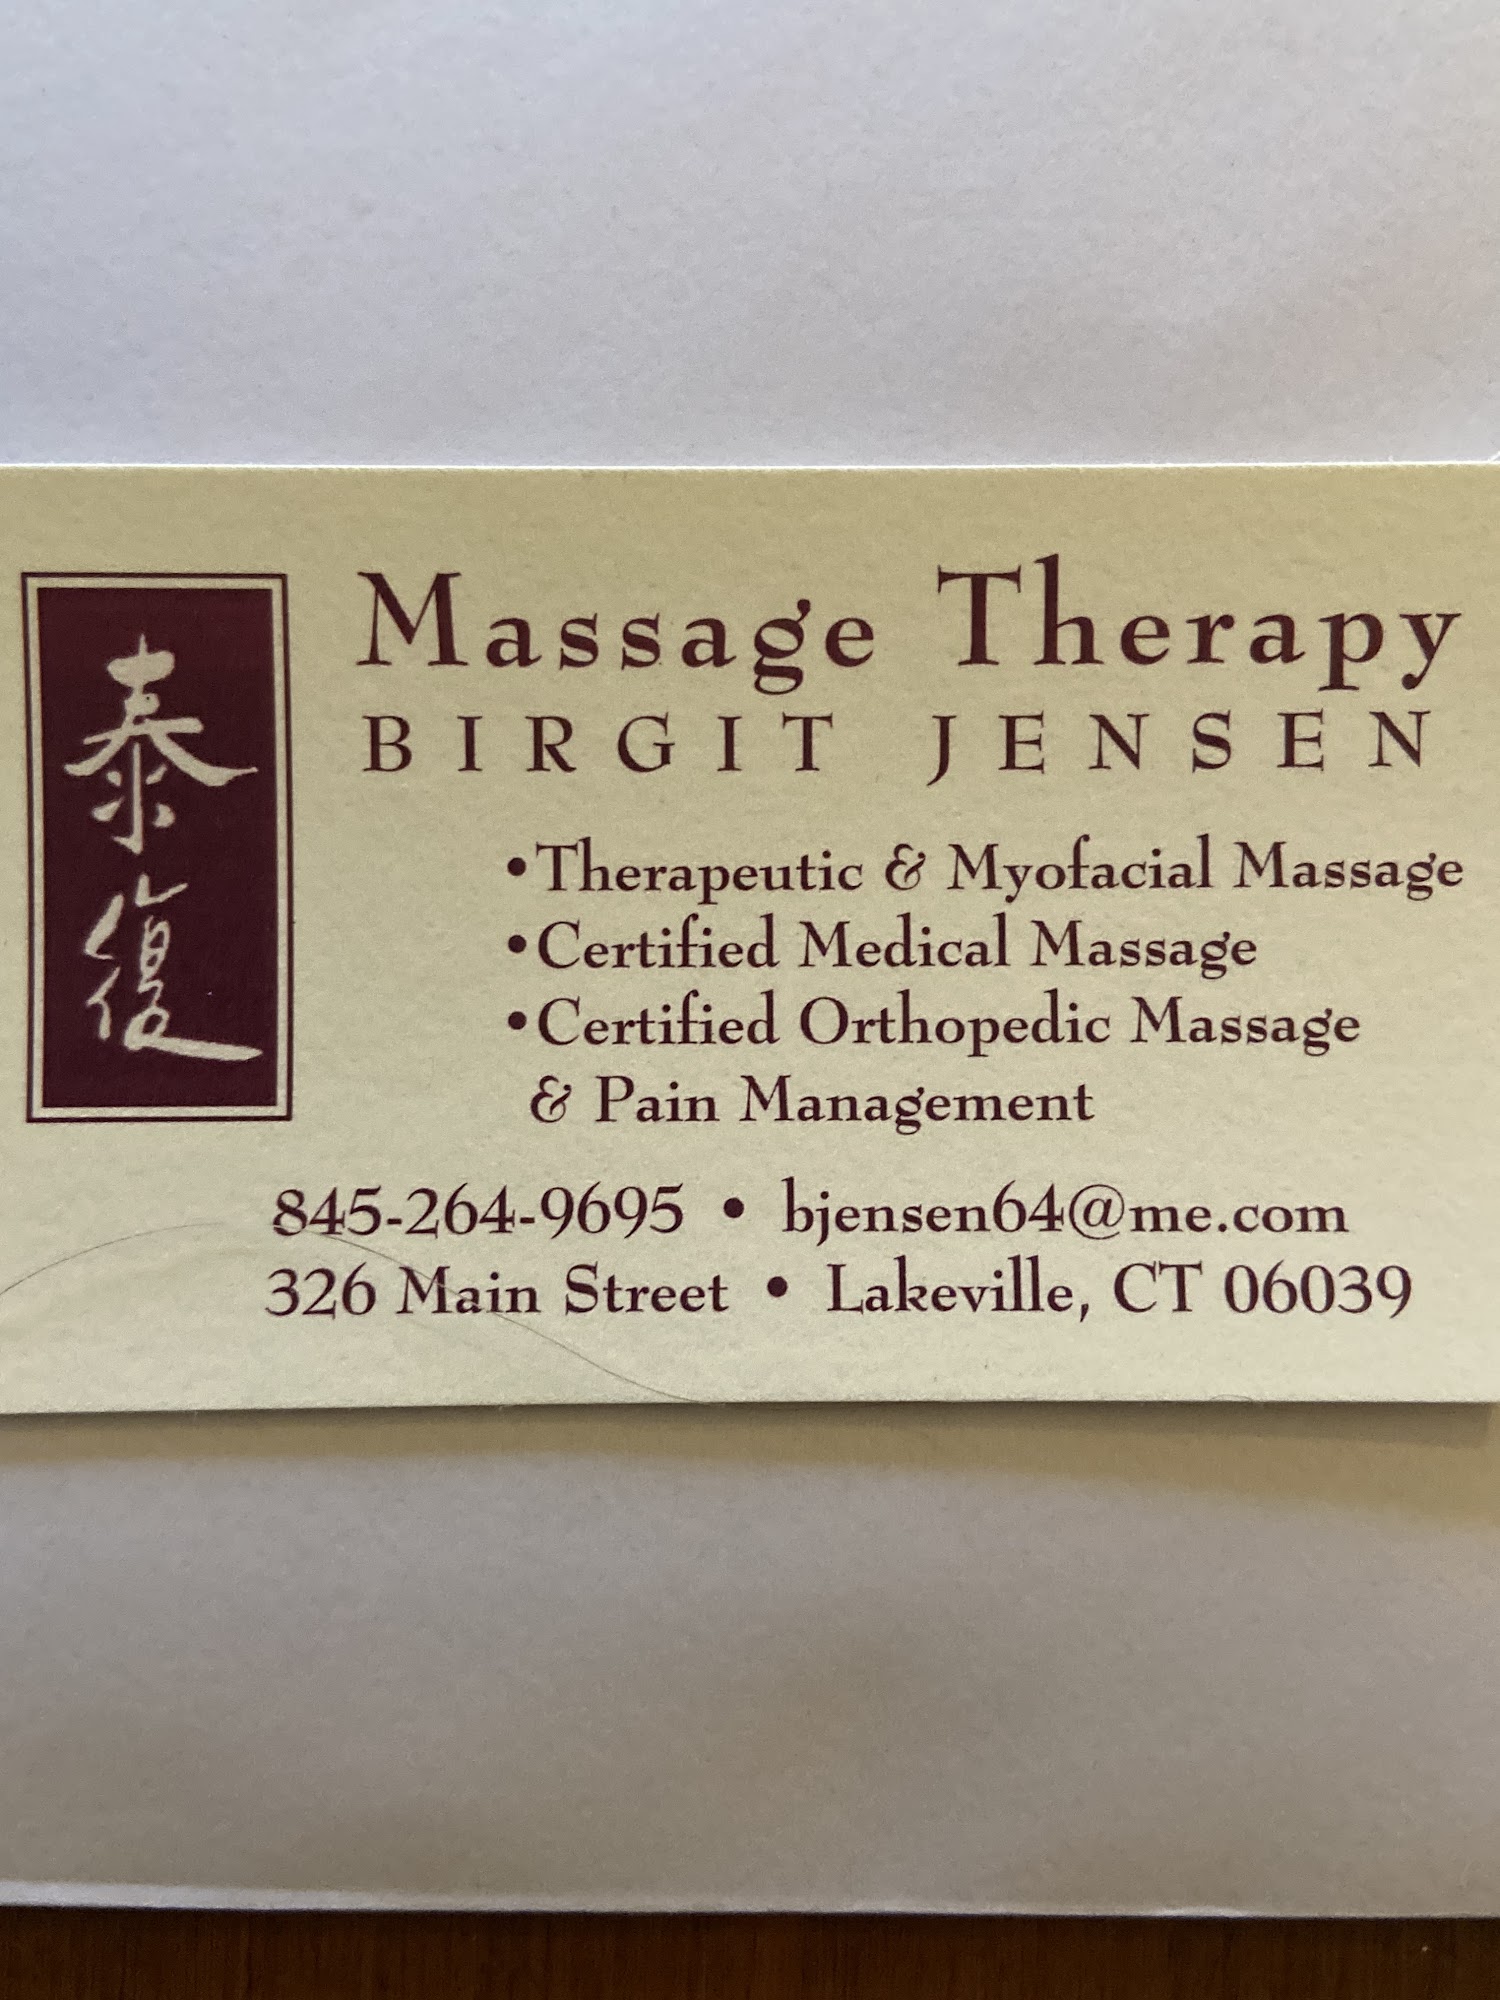 Birgit Jensen Massage Therapy 326 Main St, Lakeville Connecticut 06039